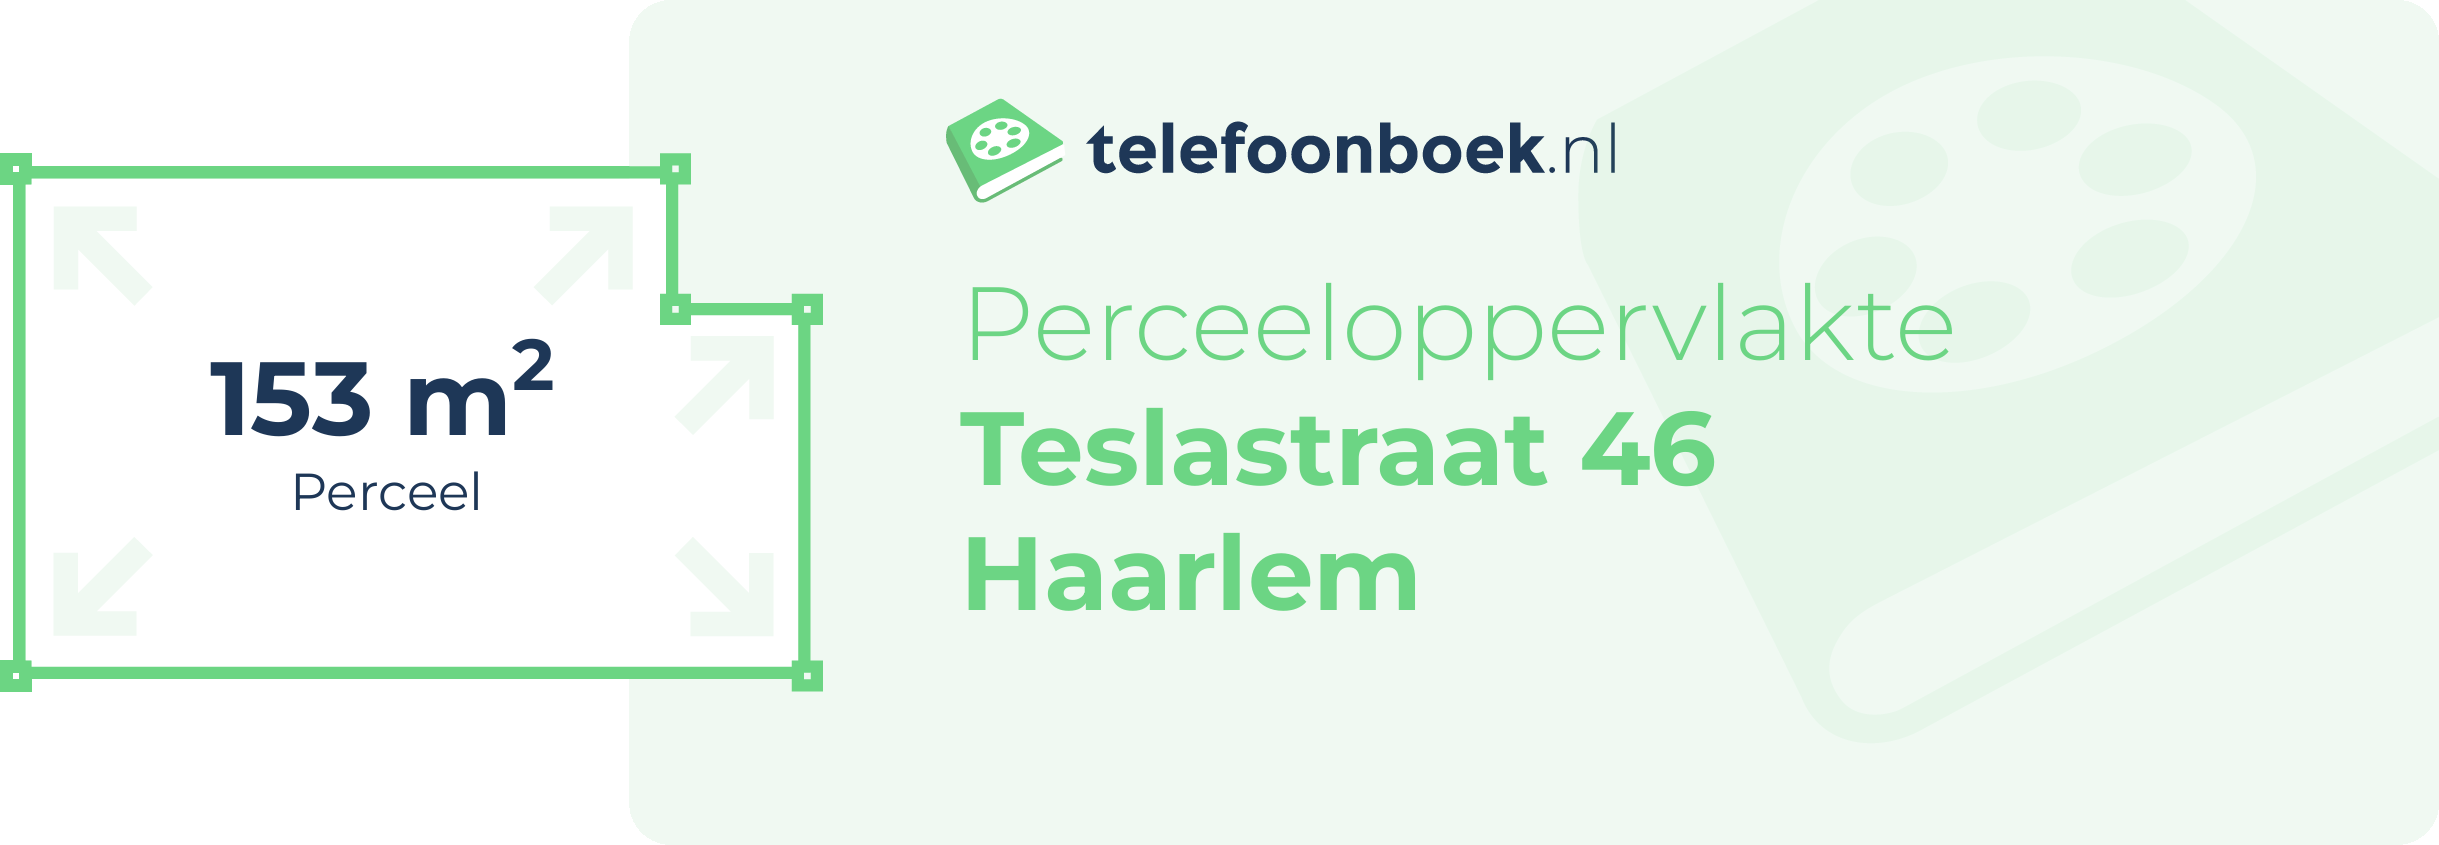 Perceeloppervlakte Teslastraat 46 Haarlem